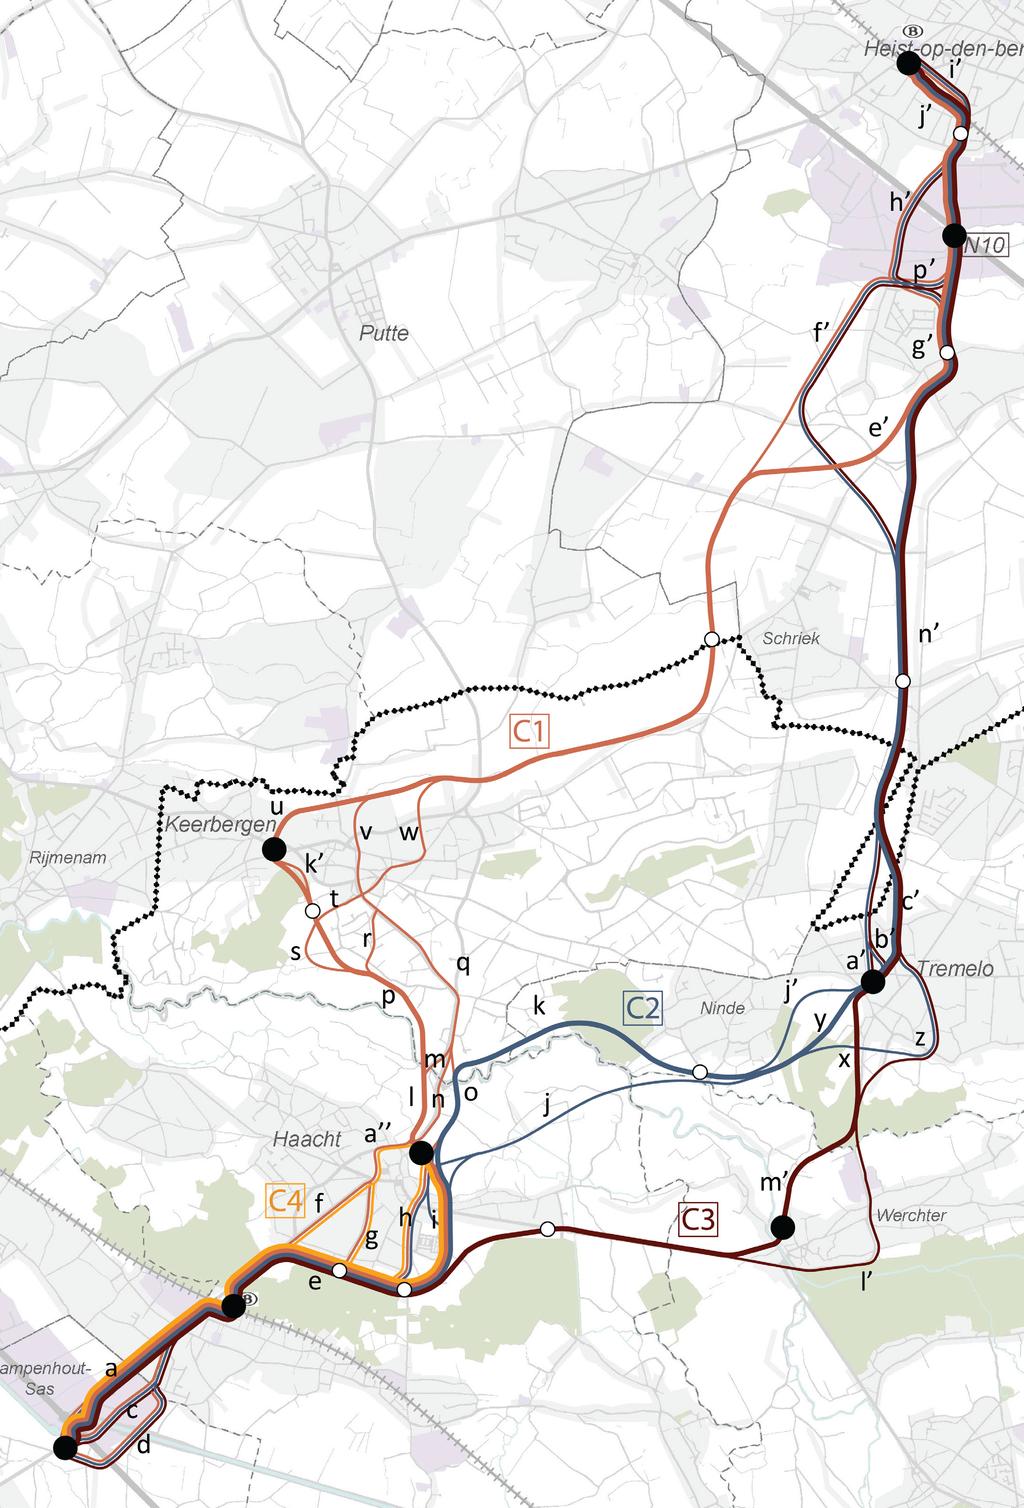 Titel: Onderzoek ruimtelijke inpassing: Overzicht deeltracé A Figuur: Project: Plan-MER tramlijn Heist-op-den-Berg - Brussel maart 2013